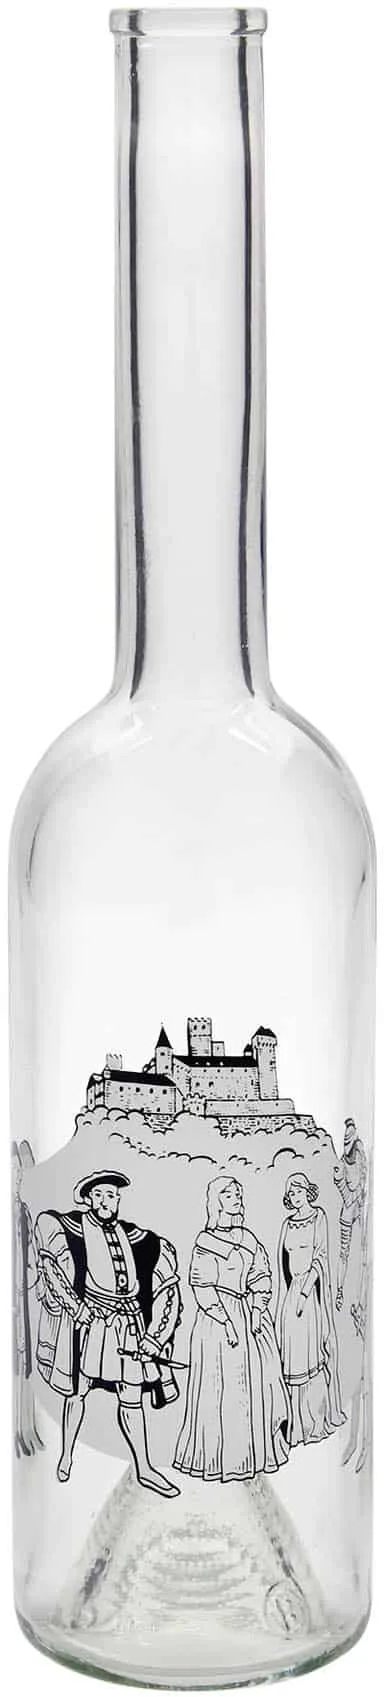 500 ml Bottiglia di vetro 'Opera', motivo: Medioevo, imboccatura: fascetta